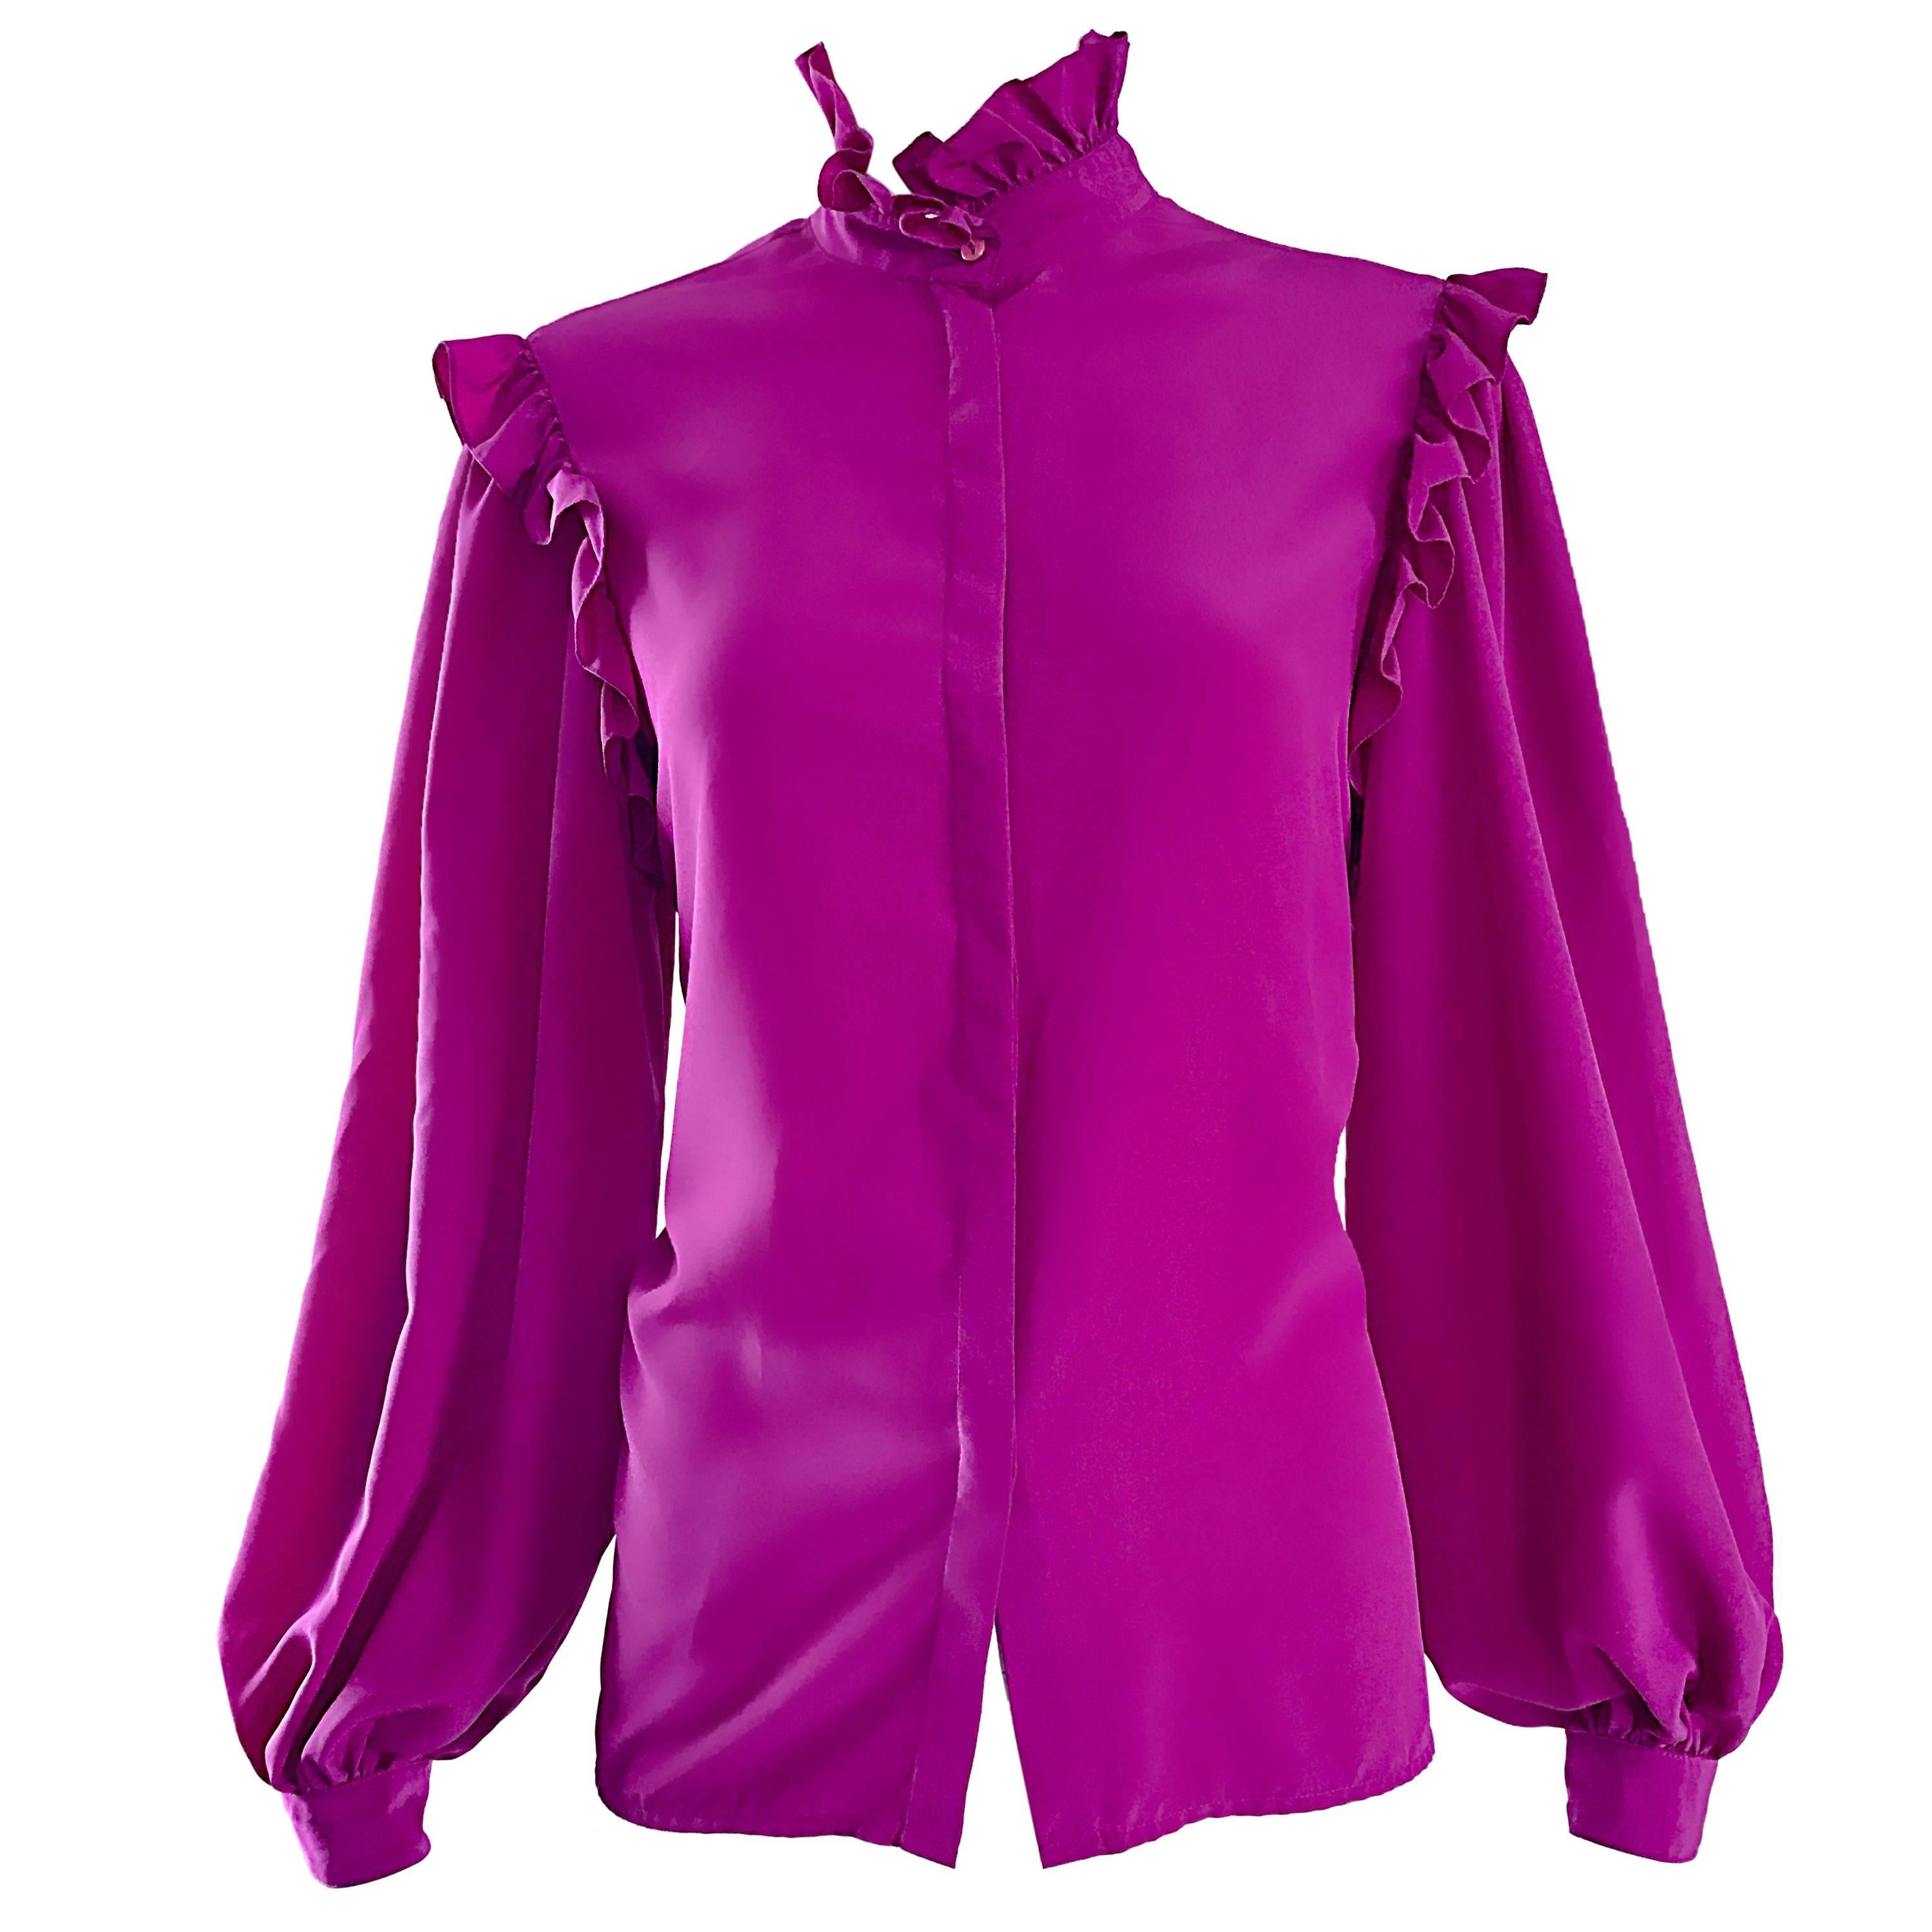 Oscar de la Renta 1970s Magenta Fuchsia Pink Silk Bishop Sleeve Vintage Blouse